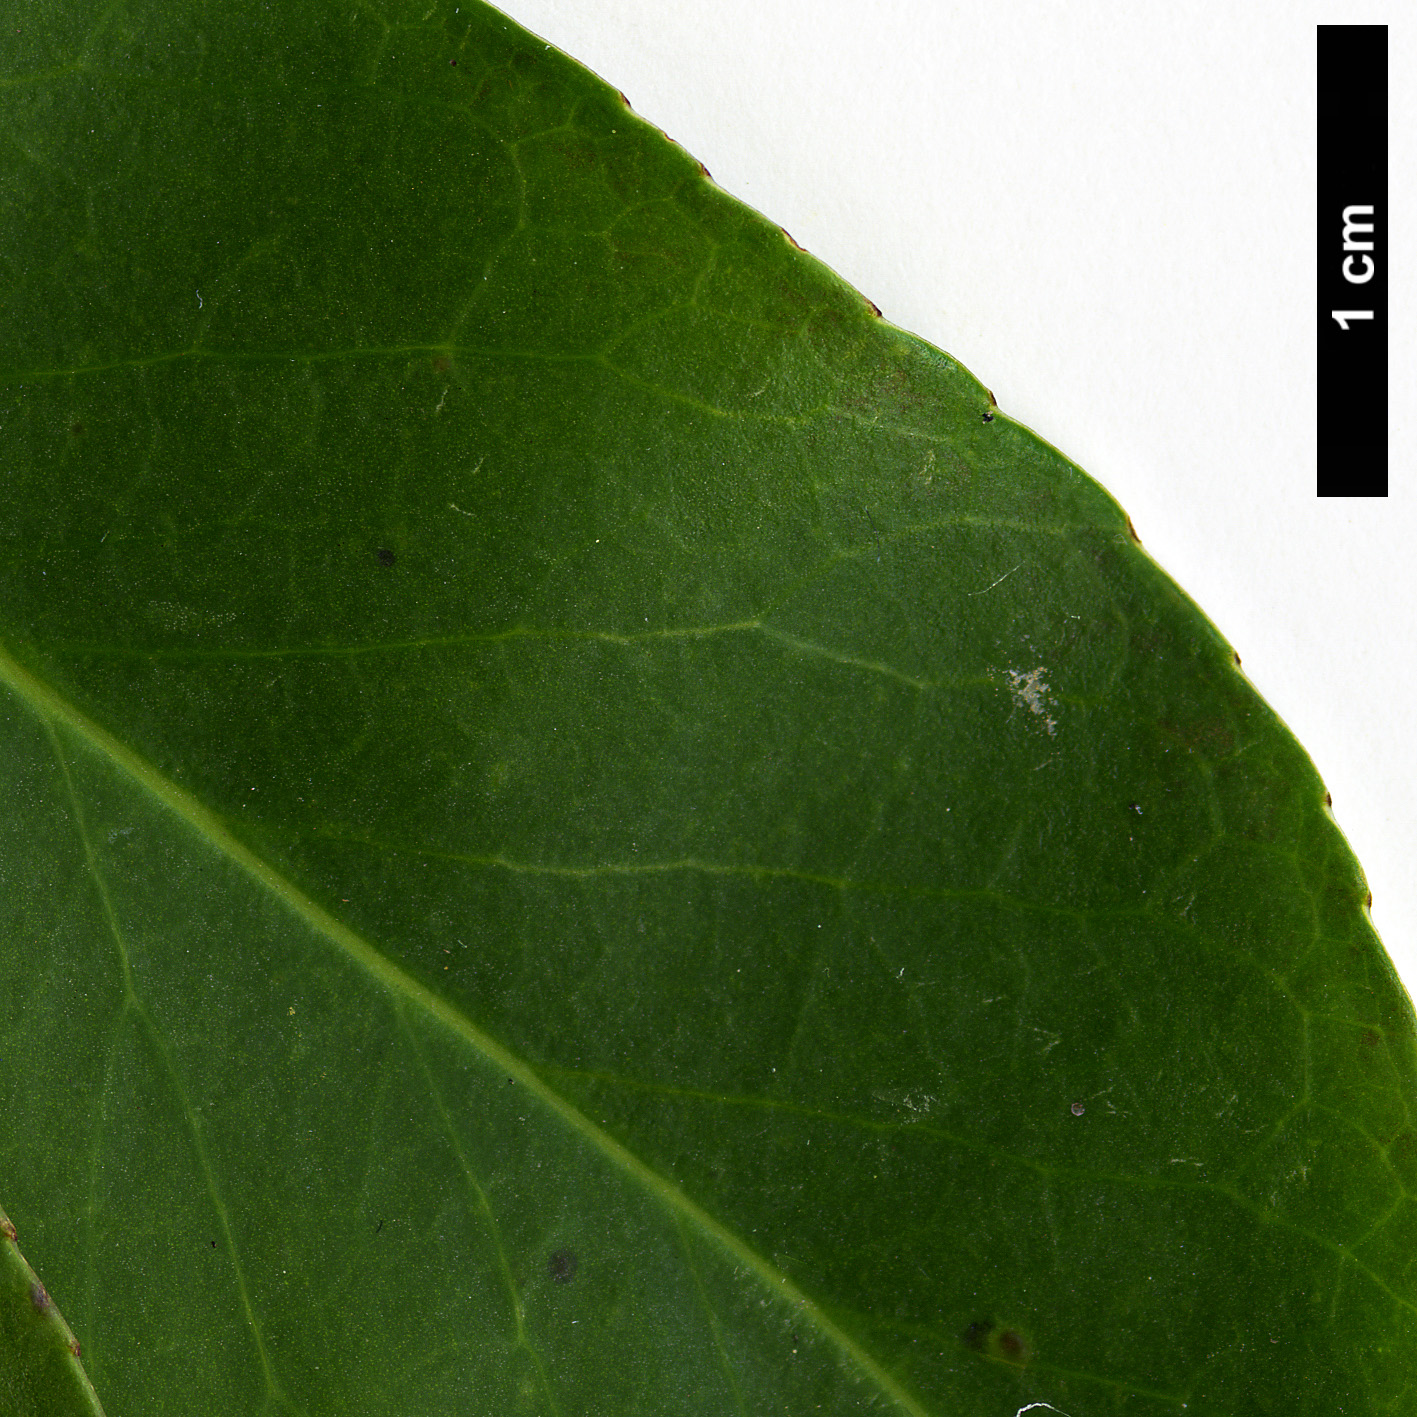 High resolution image: Family: Aquifoliaceae - Genus: Ilex - Taxon: fargesii - SpeciesSub: subsp. melanotricha